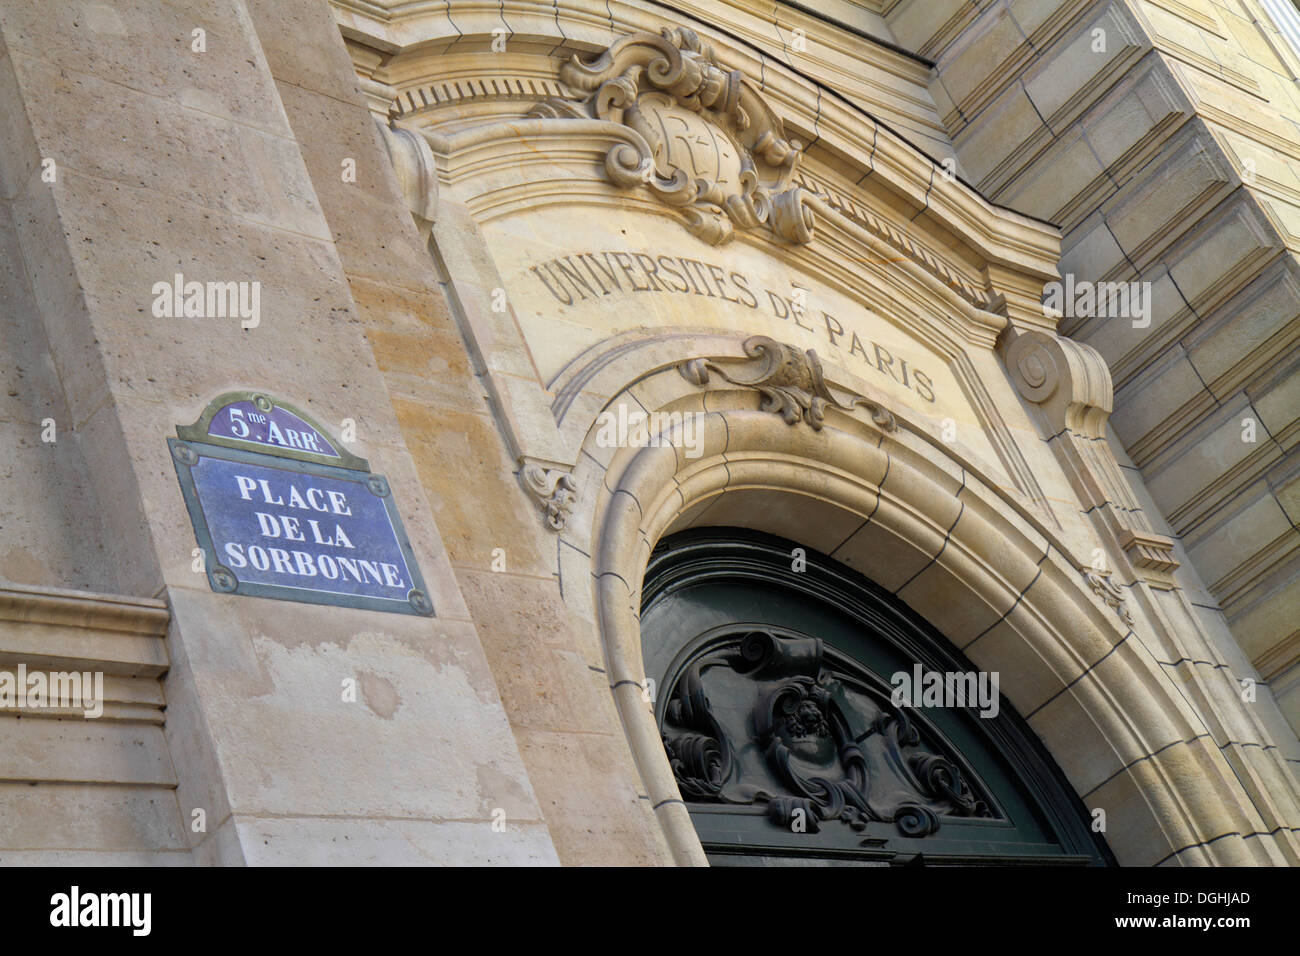 Paris France,Europe,French,5th arrondissement,Latin Quarter,Rive Gauche,Left Bank,Place de la Sorbonne,La Sorbonne Paris University,historical history Stock Photo